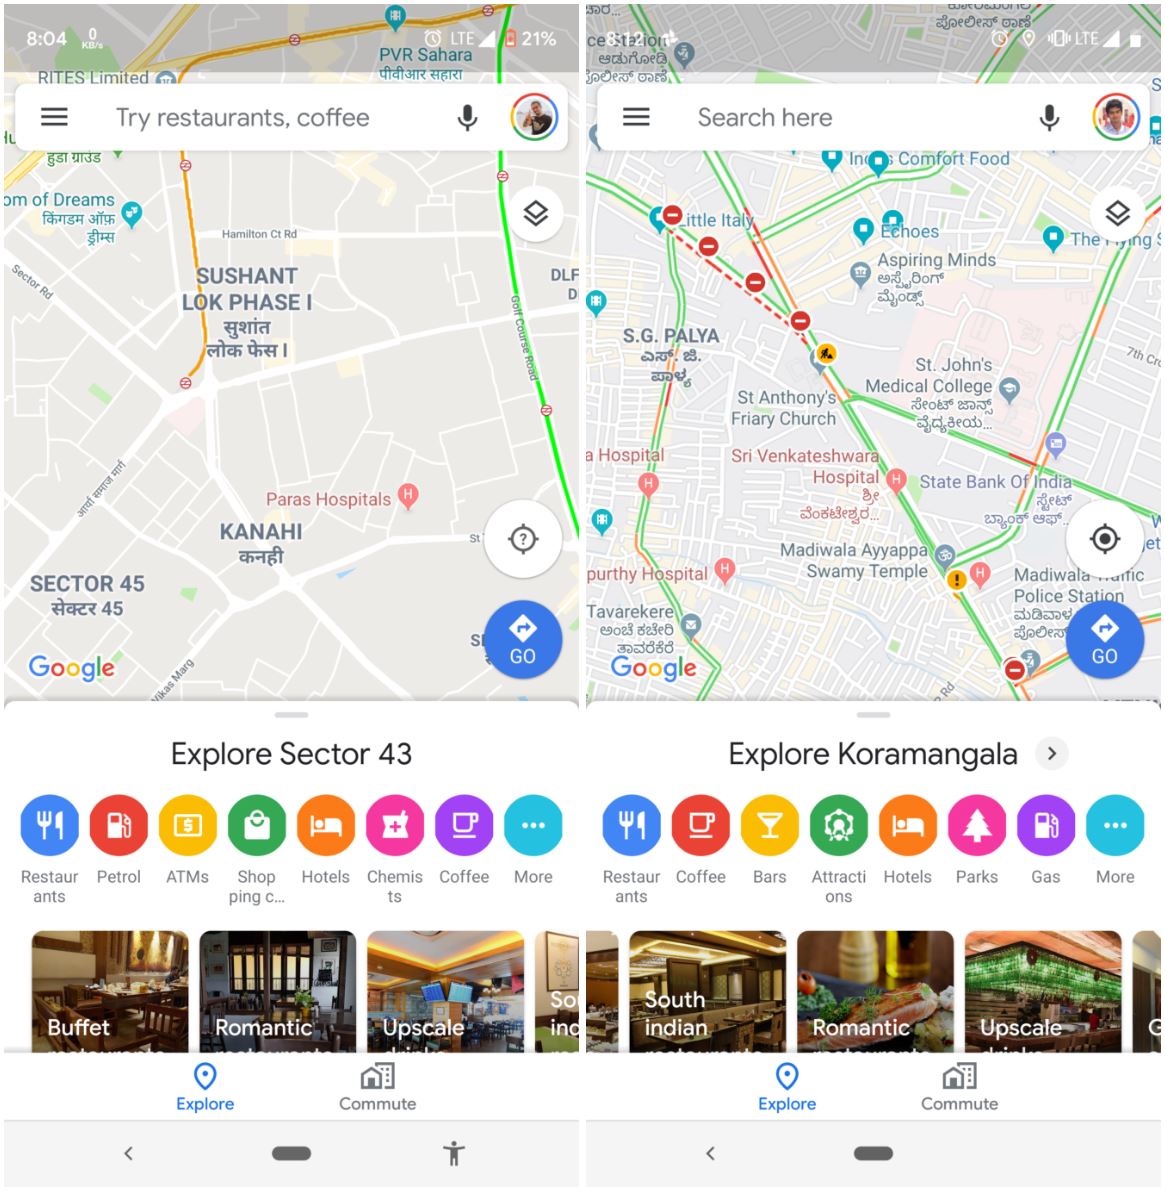 Google Maps verken iconische locaties